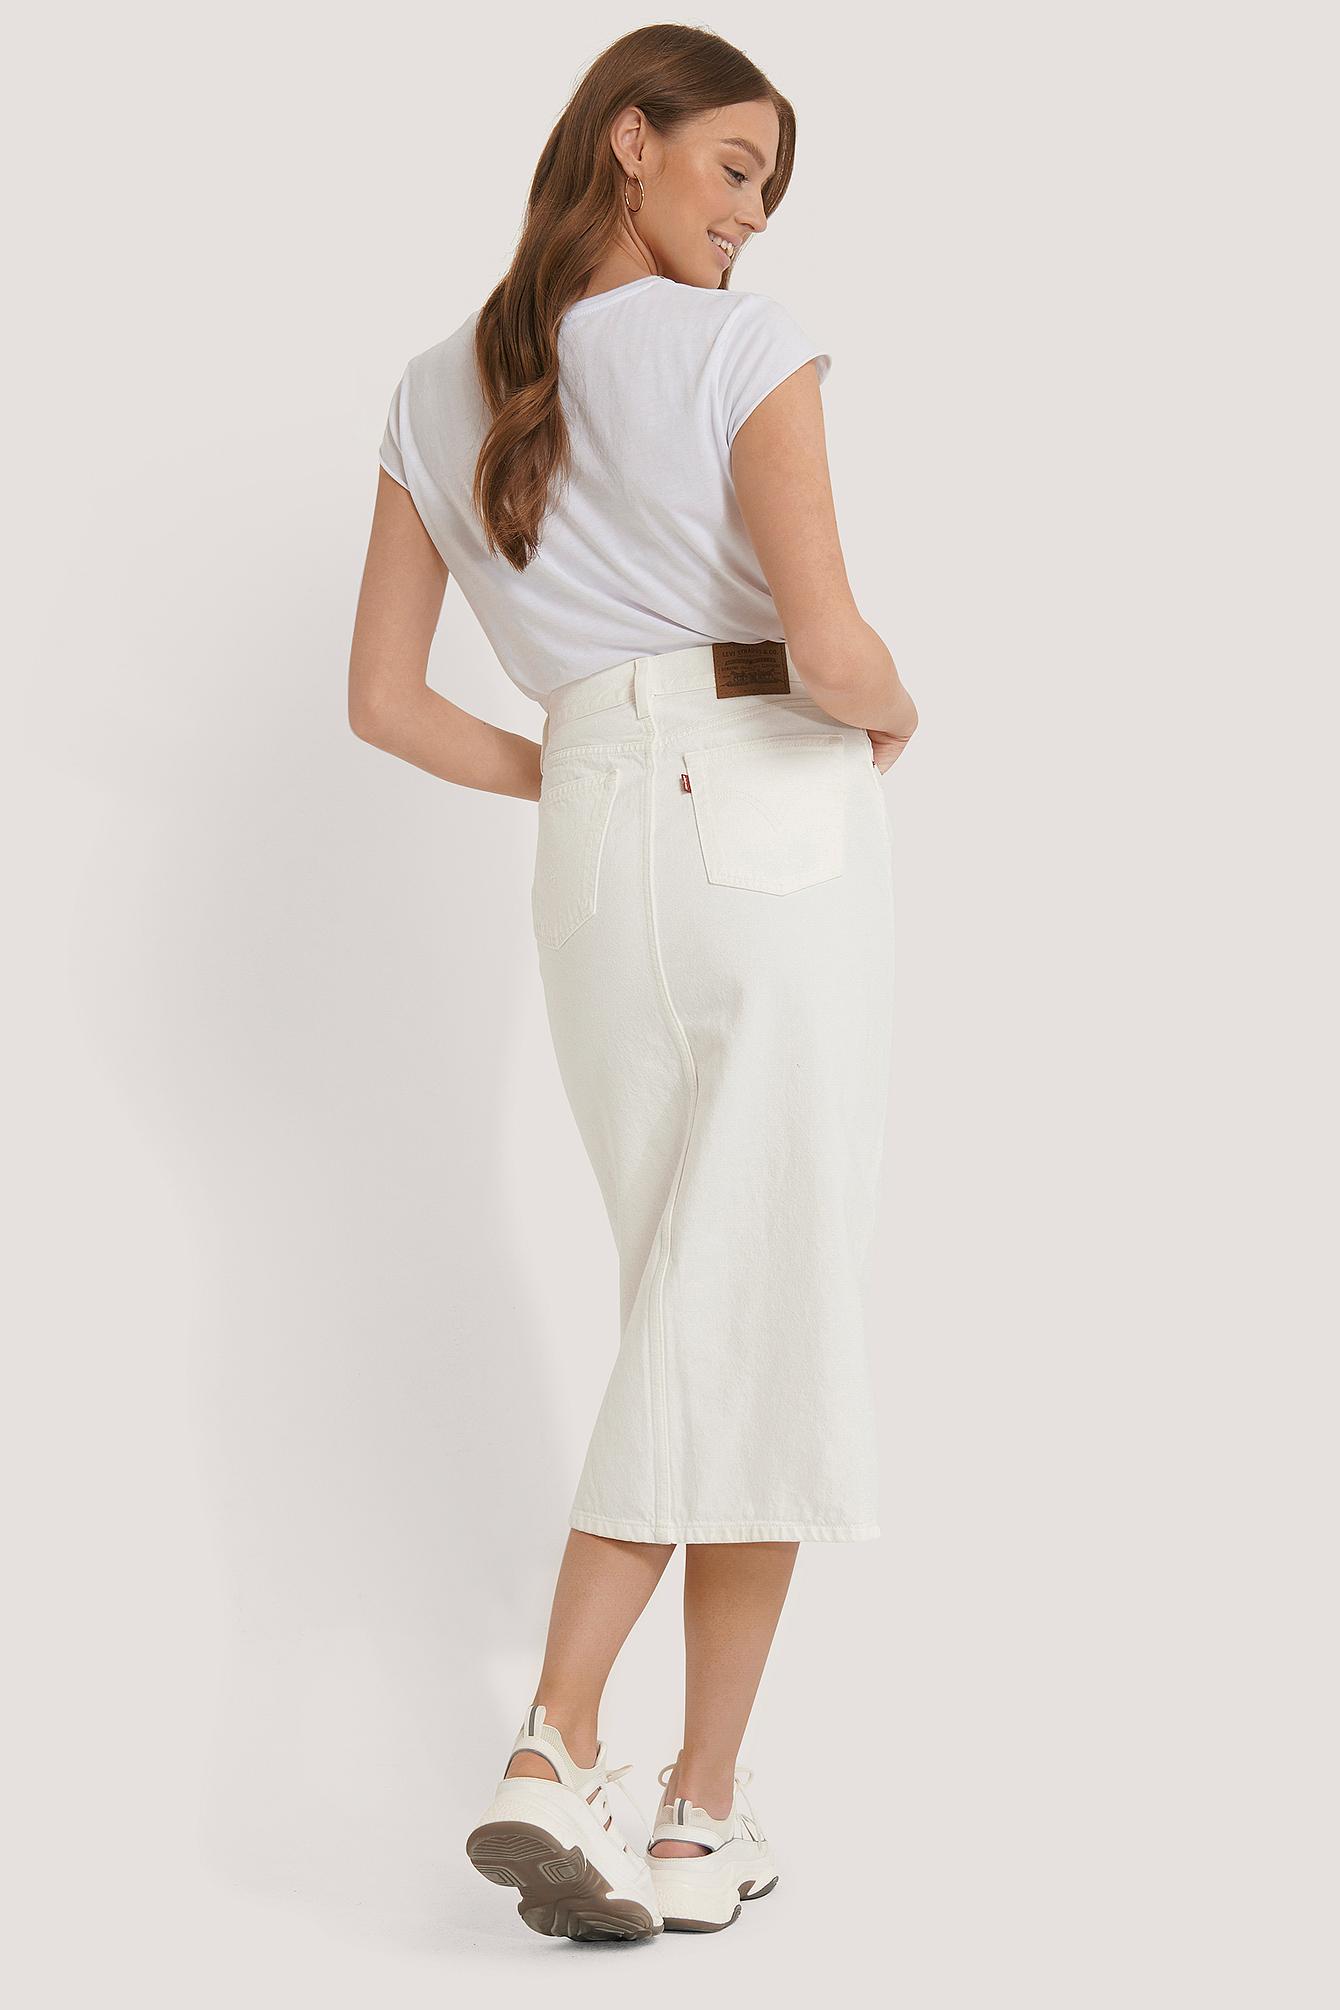 Introducir 78+ imagen levi’s white denim skirt